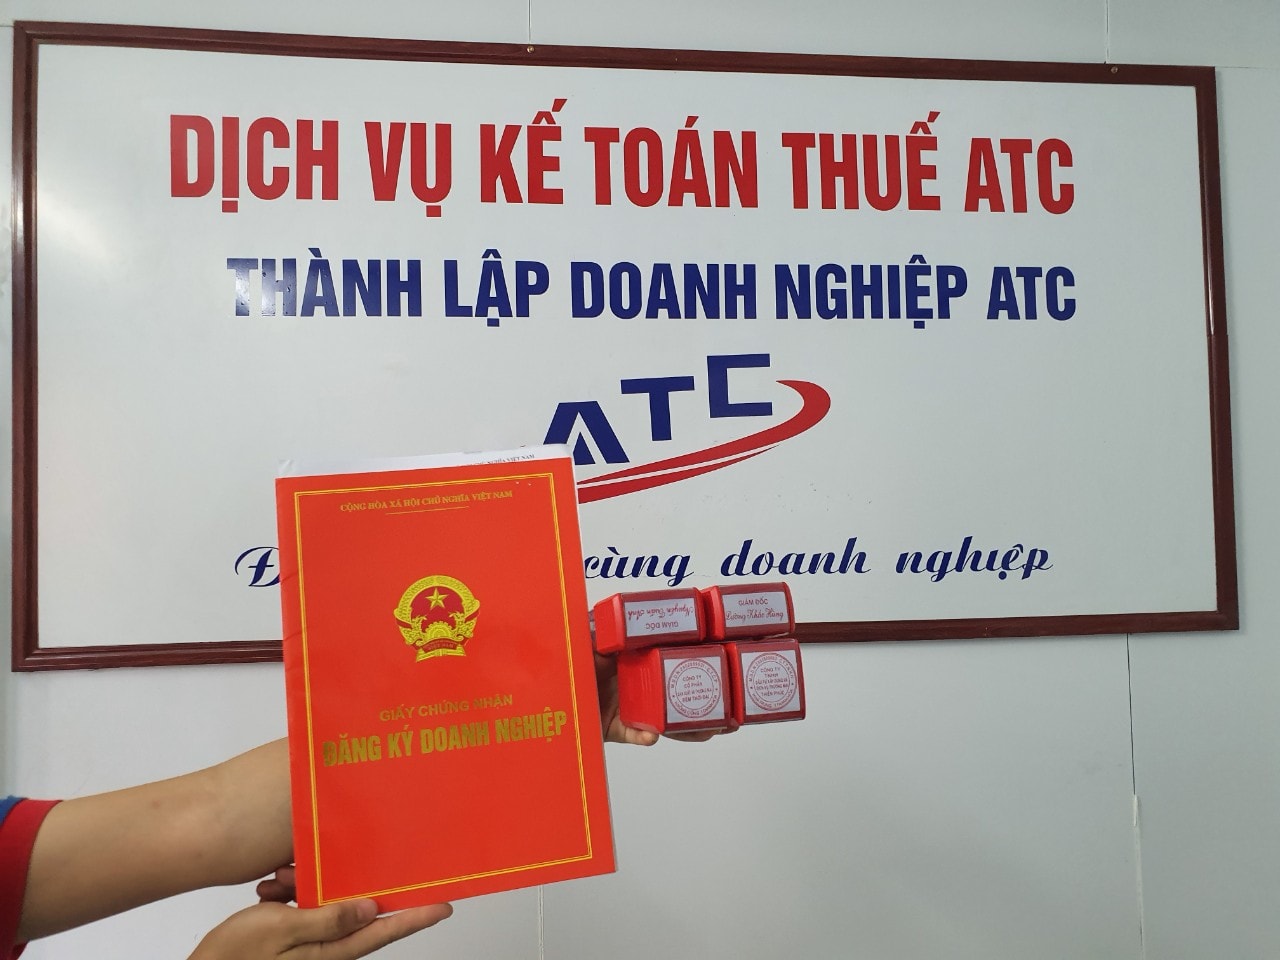 Thành lập công ty tại Thanh Hóa Chuyển đổi từ hộ kinh doanh cá thể lên công ty/doanh nghiệpTại Việt Nam, với đặc thù riêng, số lượng 